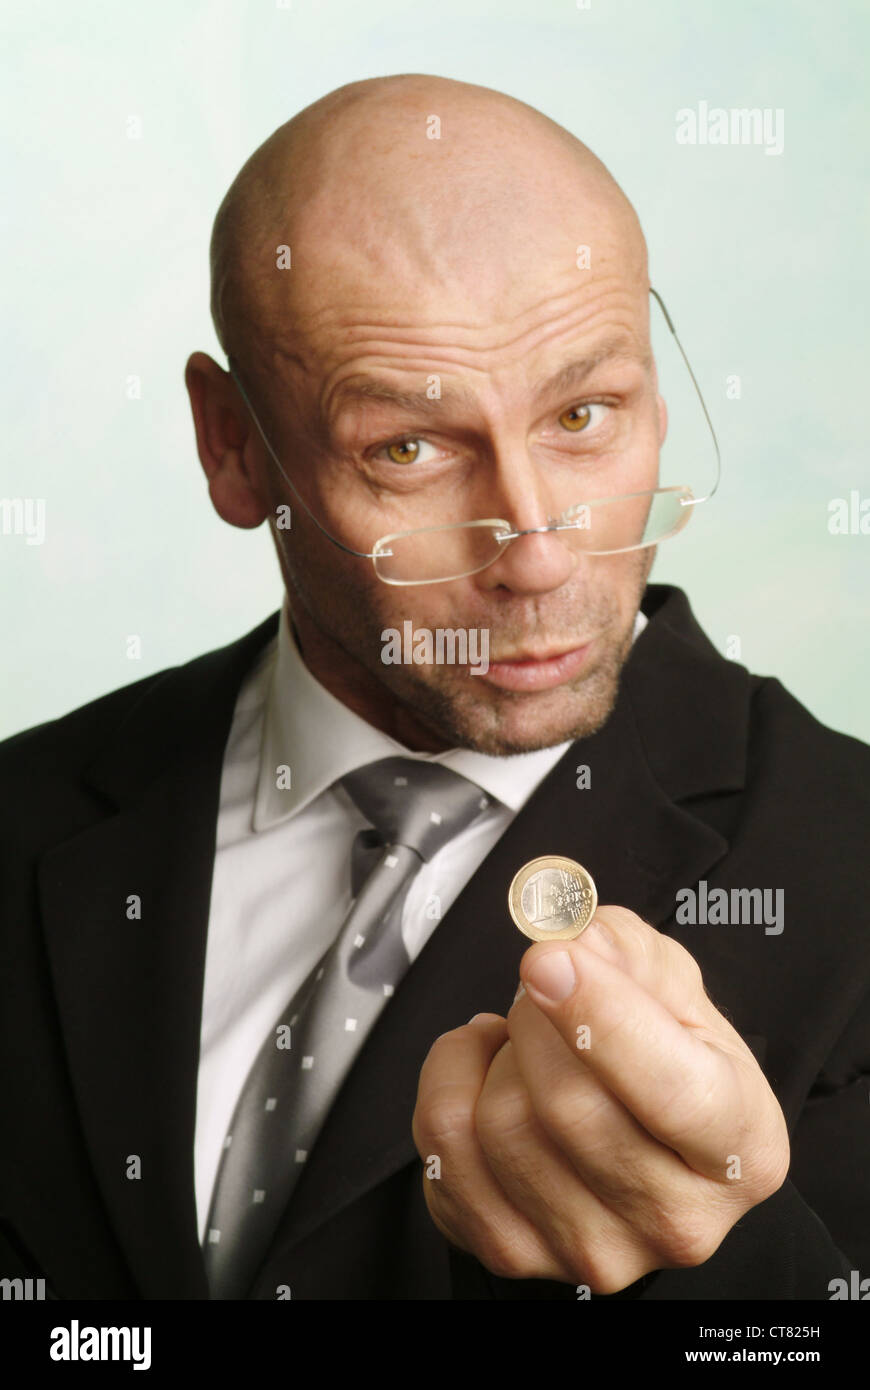 Hombre con 1 euro pedazo en la mano Foto de stock